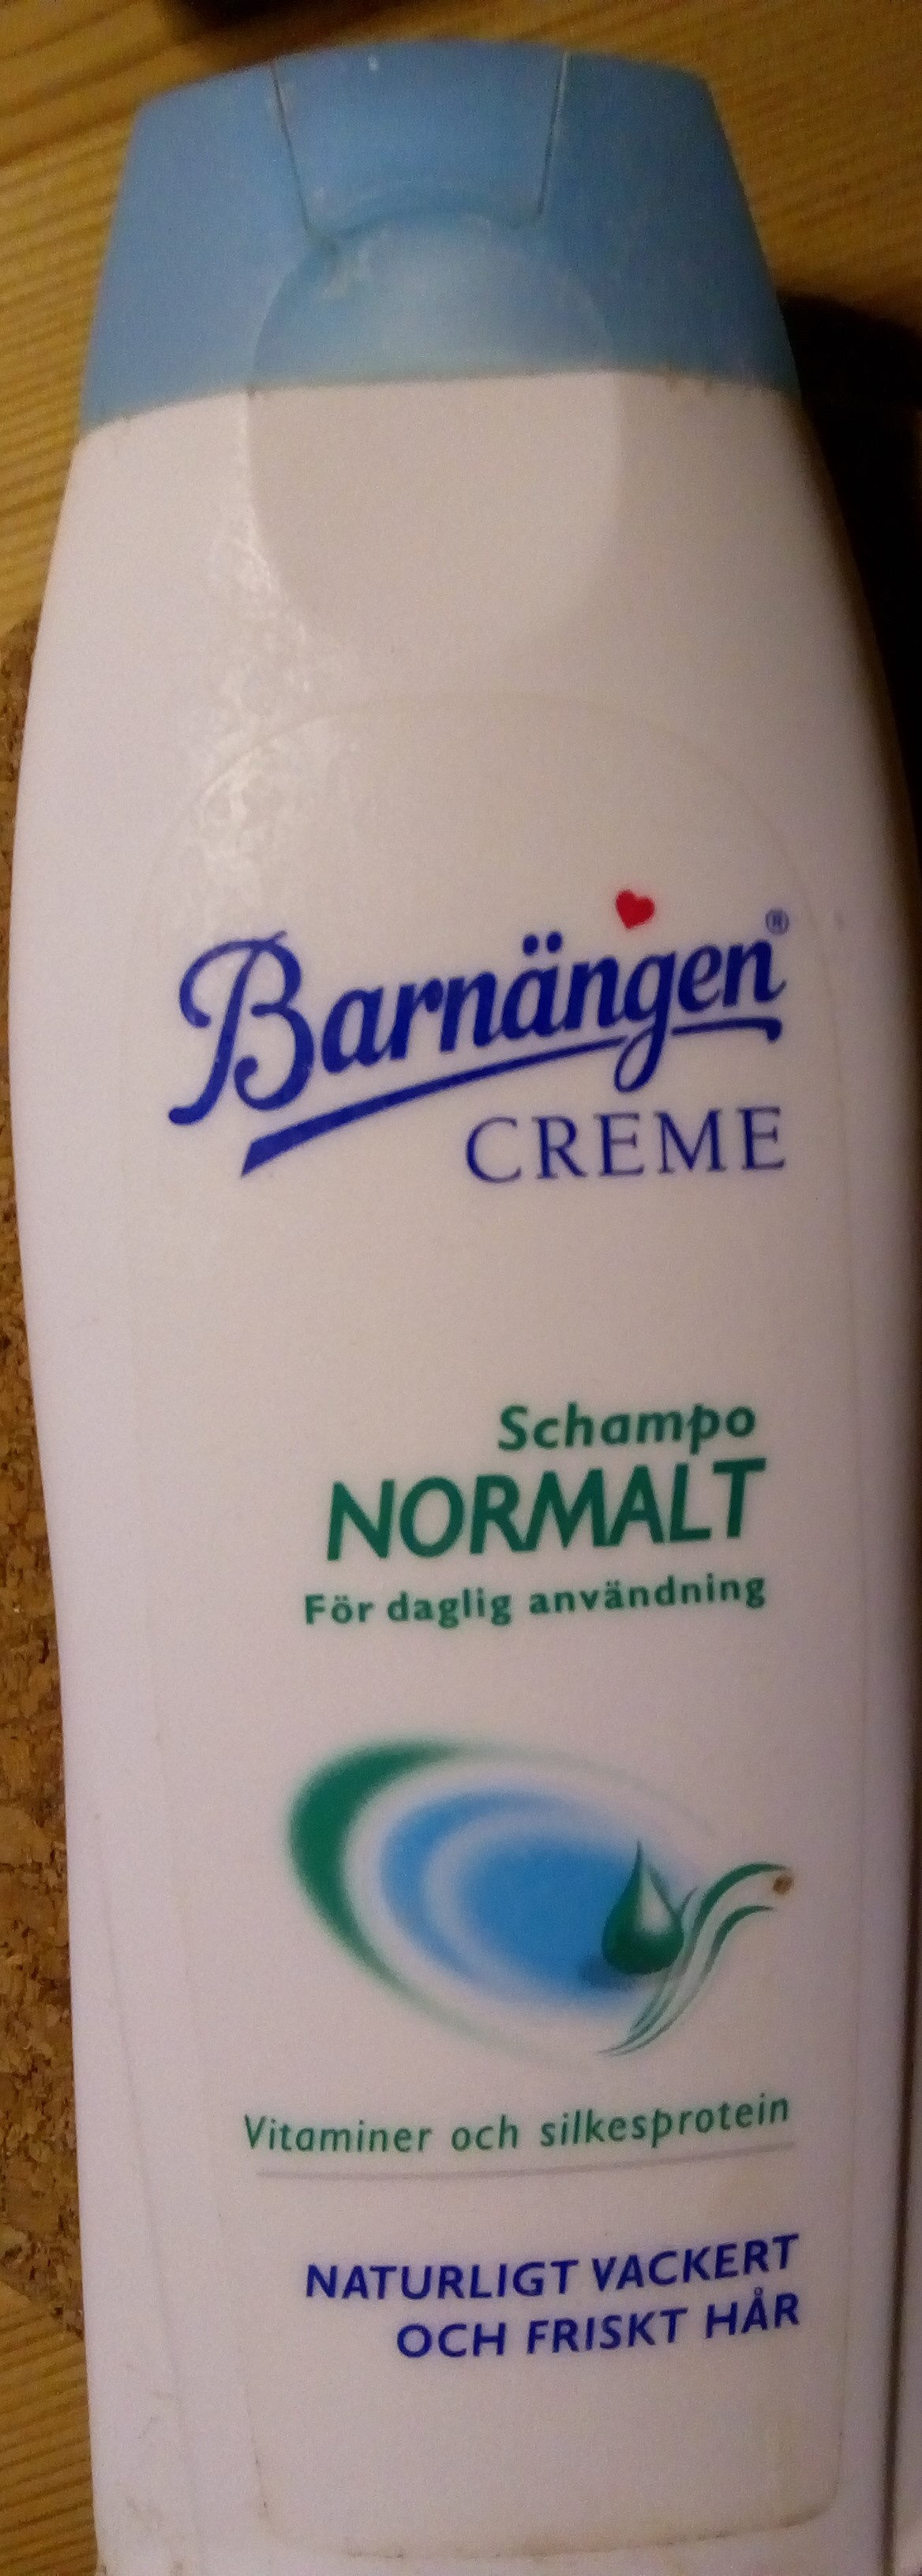 Barnängen schampo normalt - Produkt - sv